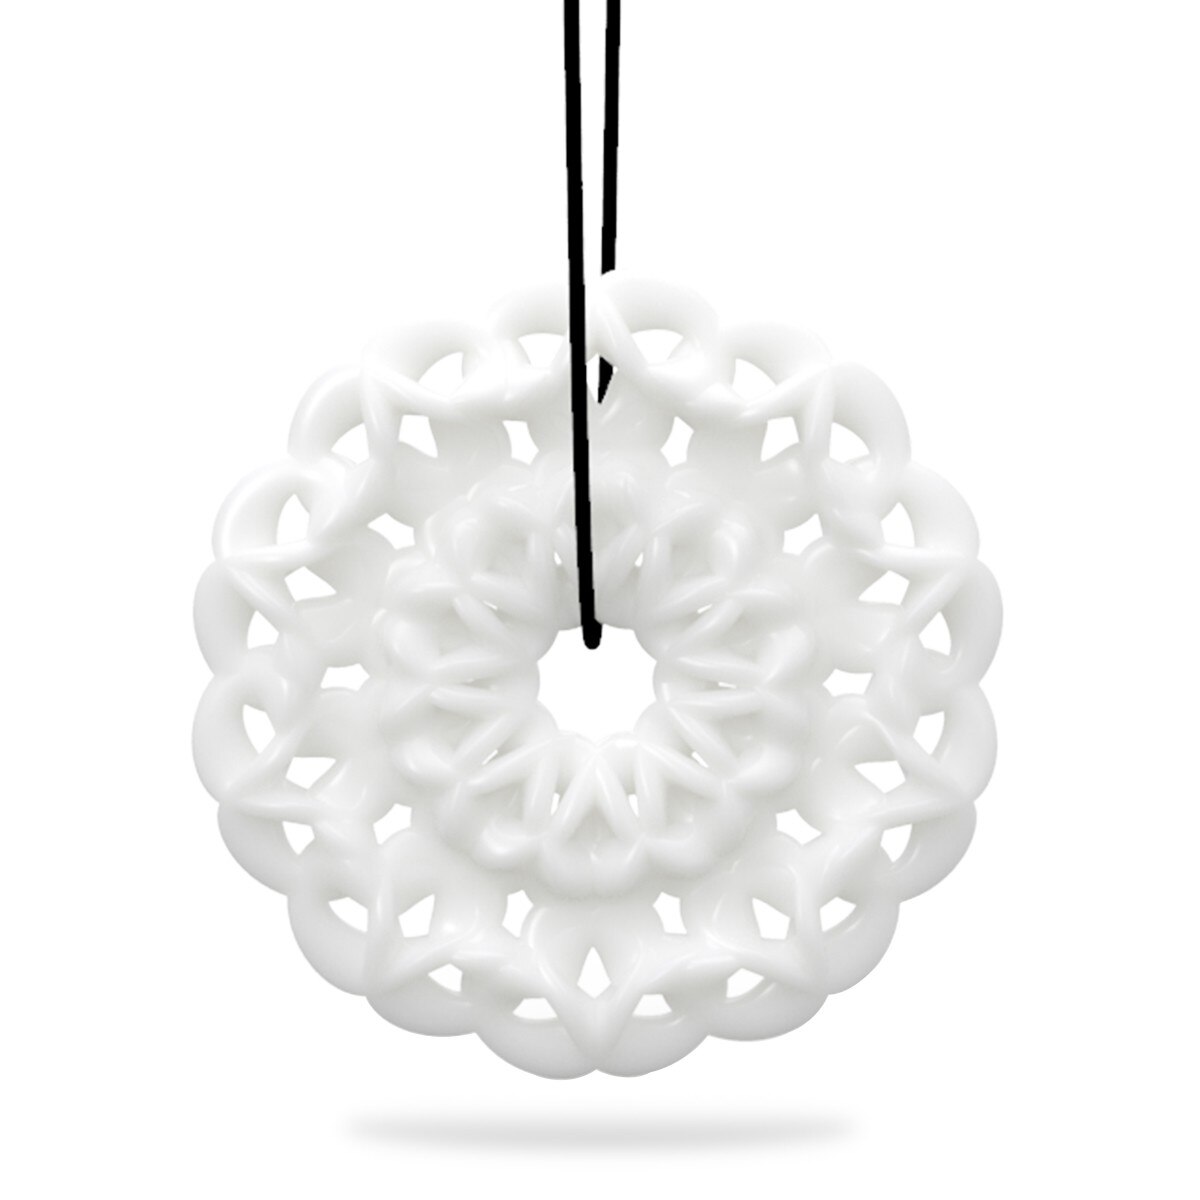 Hanger Decoratie 3D Gedrukt Sieraden Cirkel Elegante Modellering Hanger Sieraden Ketting Accessoires